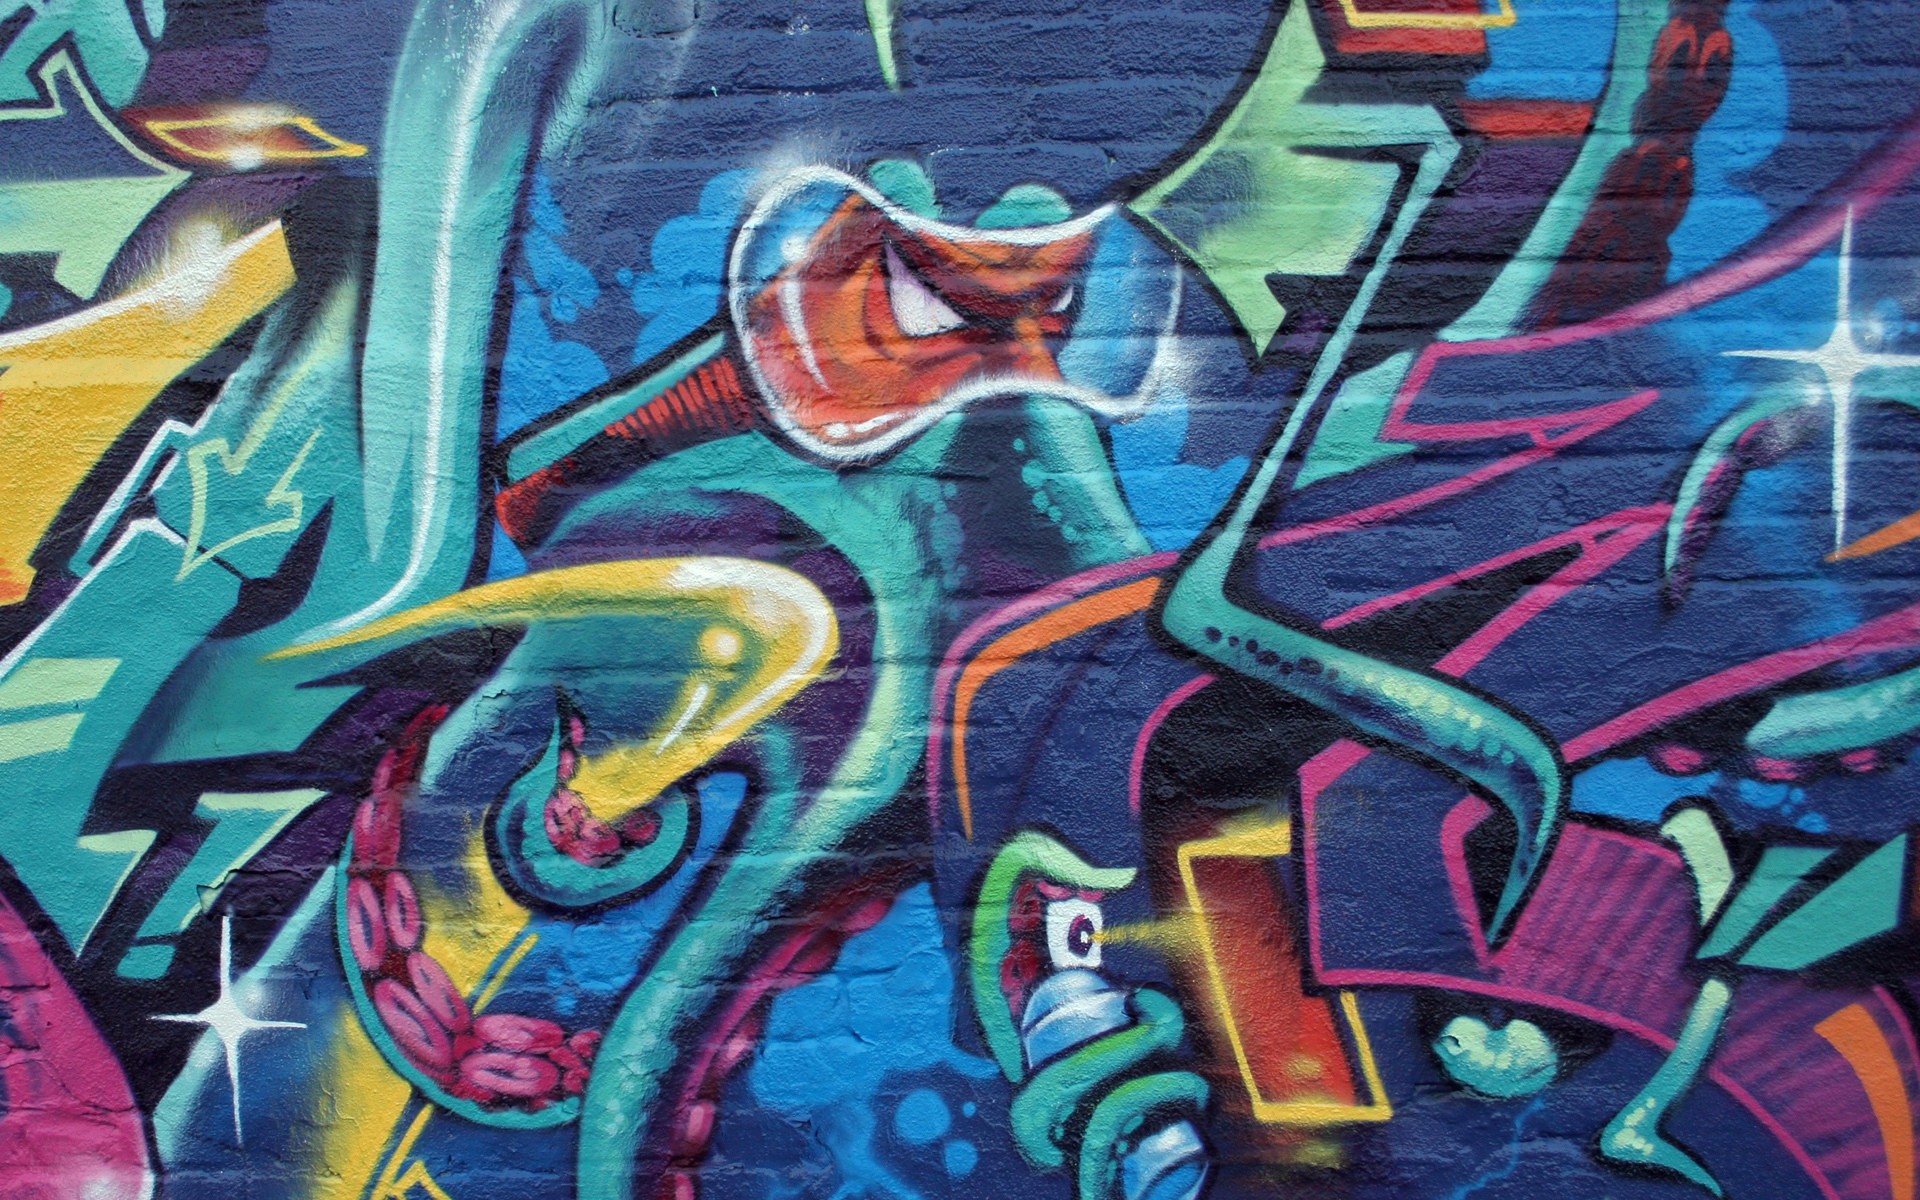 Graffiti Wallpaper Image For Laptop Desktops